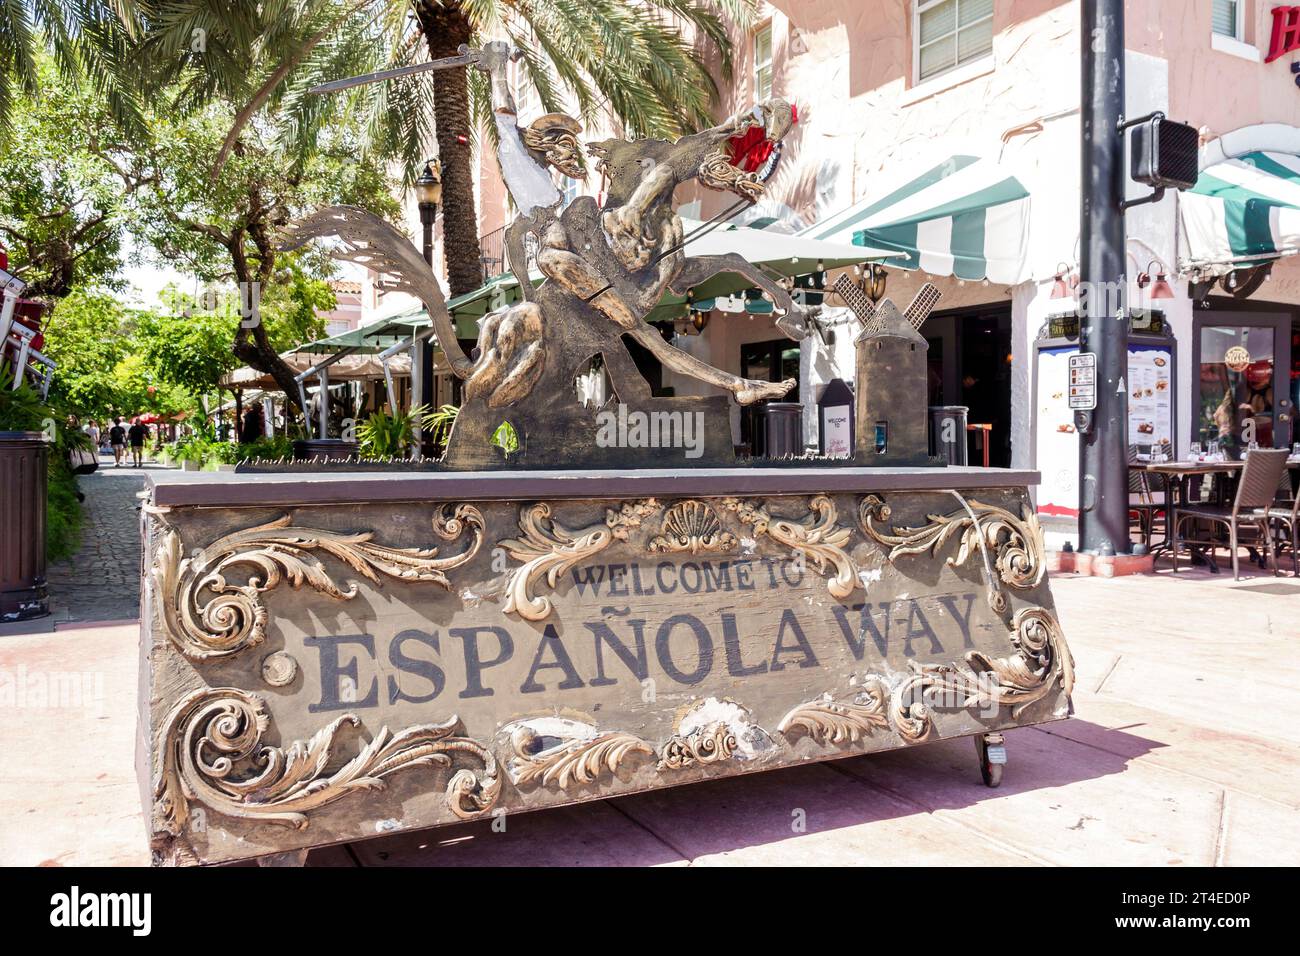 Miami Beach Floride, village espagnol historique Espanola Way, panneau de bienvenue pour piétons, sculpture d'art, figure Don Quichotte Banque D'Images